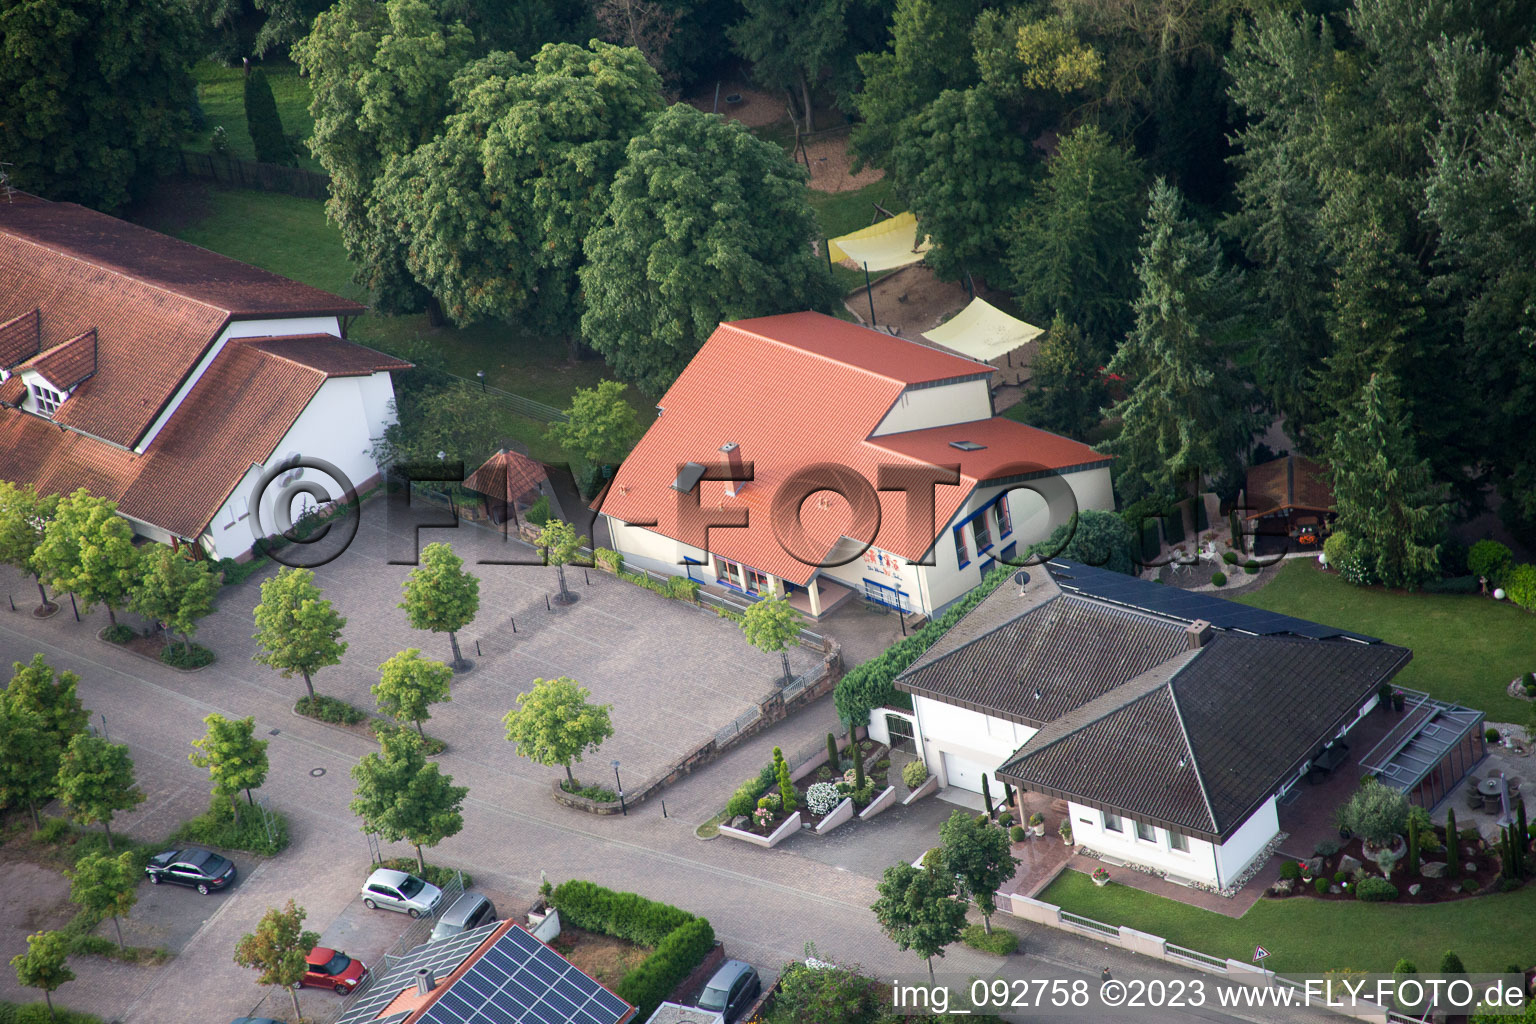 Luftbild von Ortsteil Billigheim in Billigheim-Ingenheim im Bundesland Rheinland-Pfalz, Deutschland